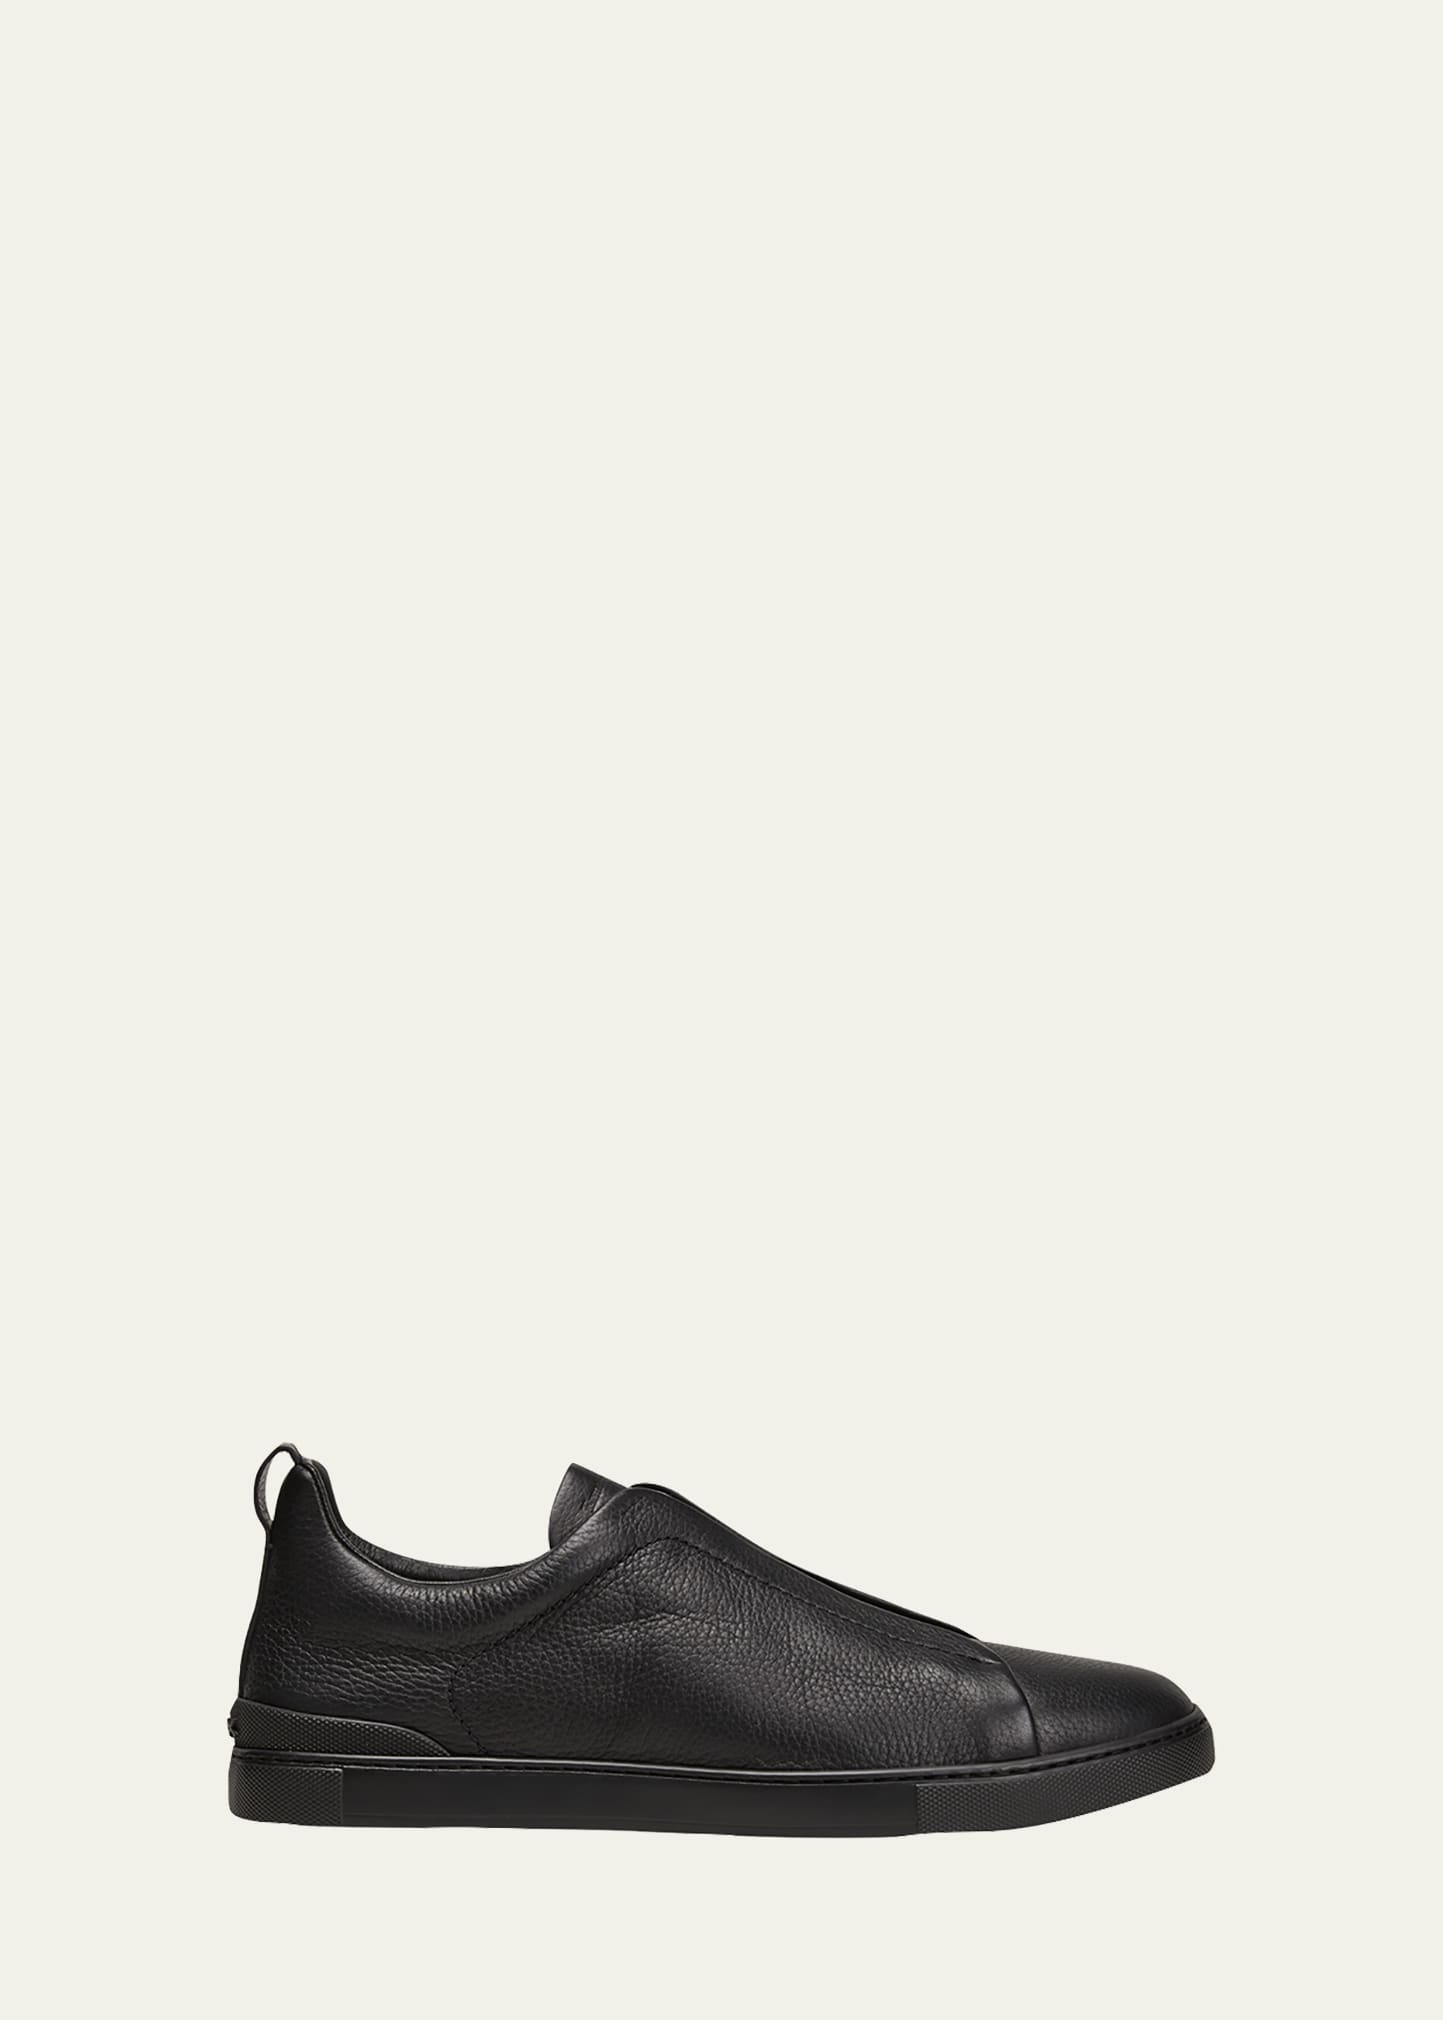 Men's Triple Stitch Deerskin Leather Sneakers